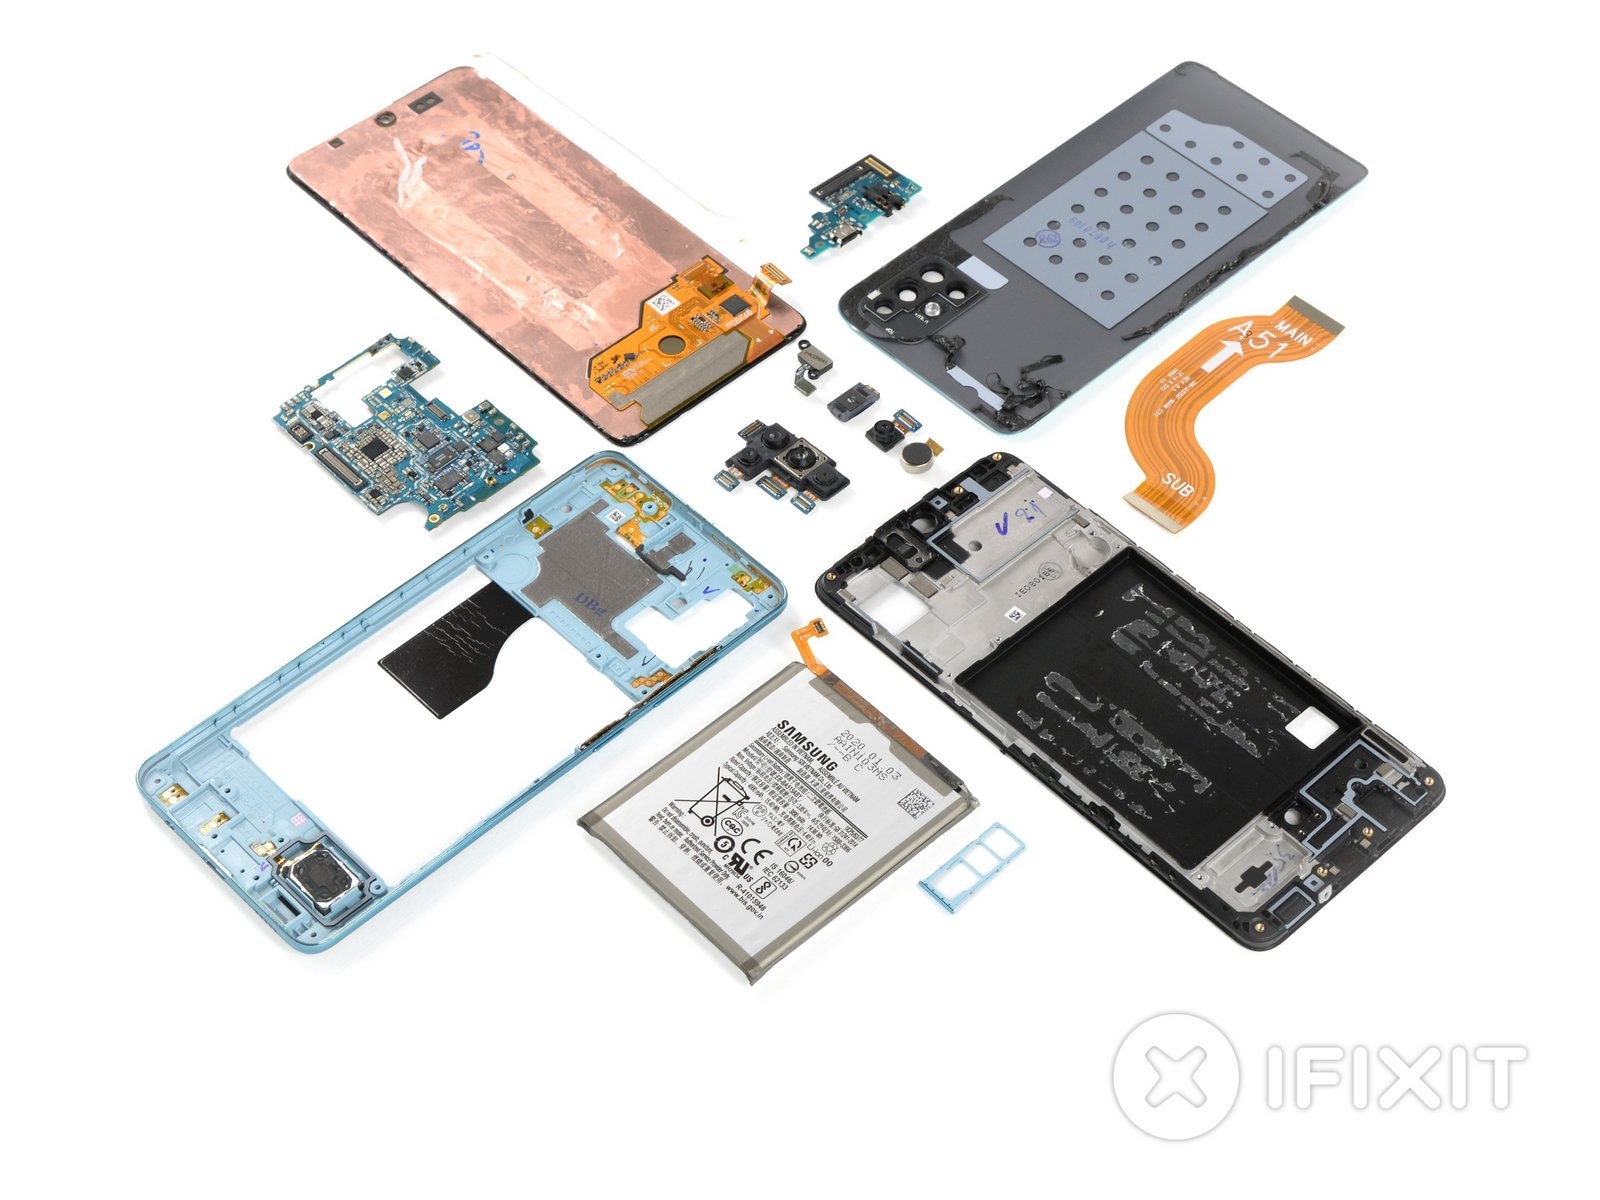 Samsung Galaxy A51 desmontado por iFixit: muchos componentes modulares, pero demasiado pegamento arruina los planos (foto)